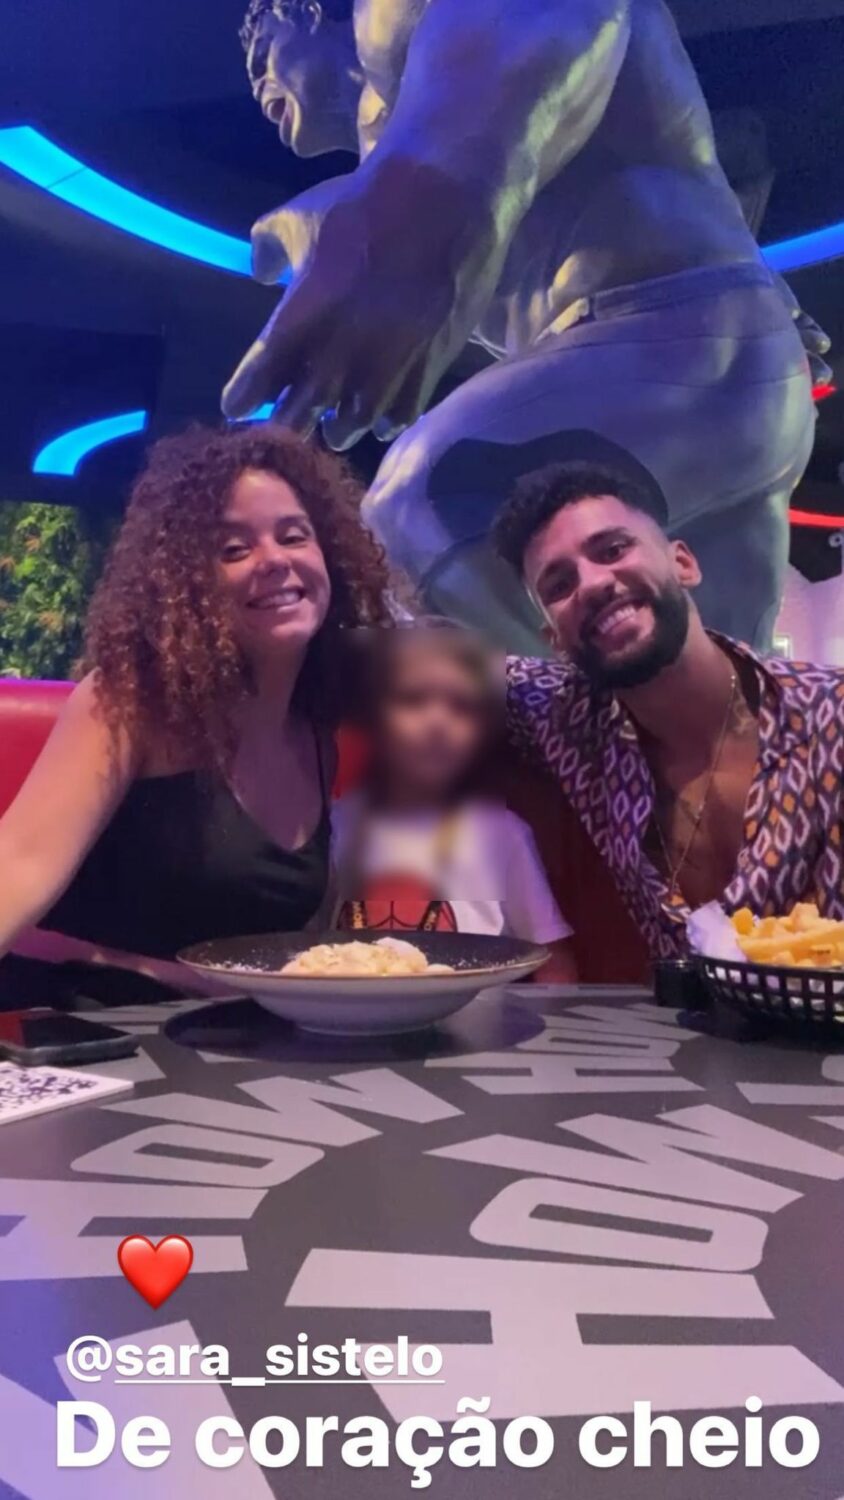 &#8220;Família&#8221; feliz! Moisés Figueira posa com o filho e Sara Sistelo: &#8220;De coração cheio&#8221;